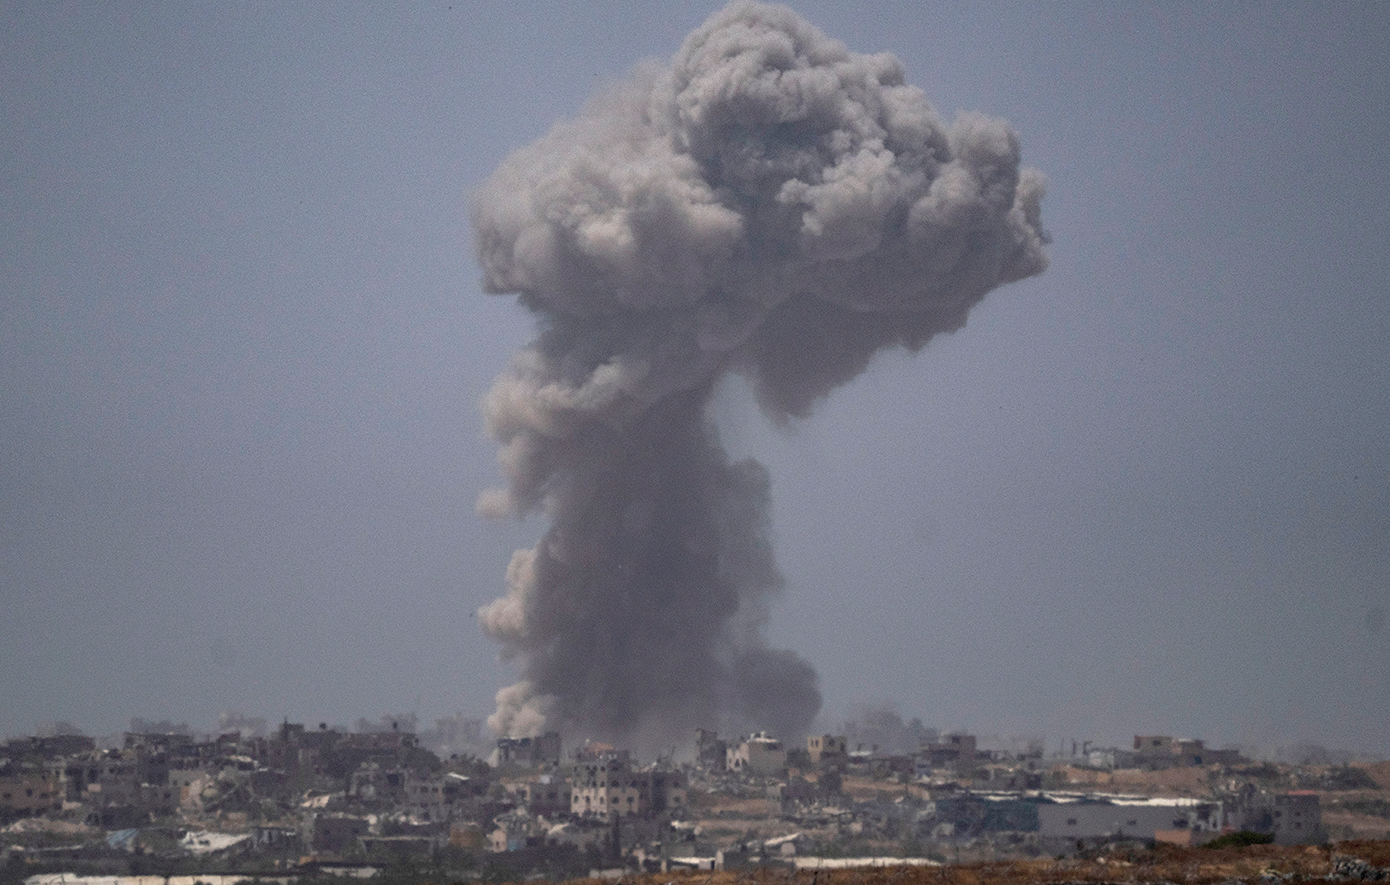 ΟΗΕ: Η εκστρατεία βομβαρδισμού του Ισραήλ μπορεί να ισοδυναμεί με έγκλημα κατά της ανθρωπότητας